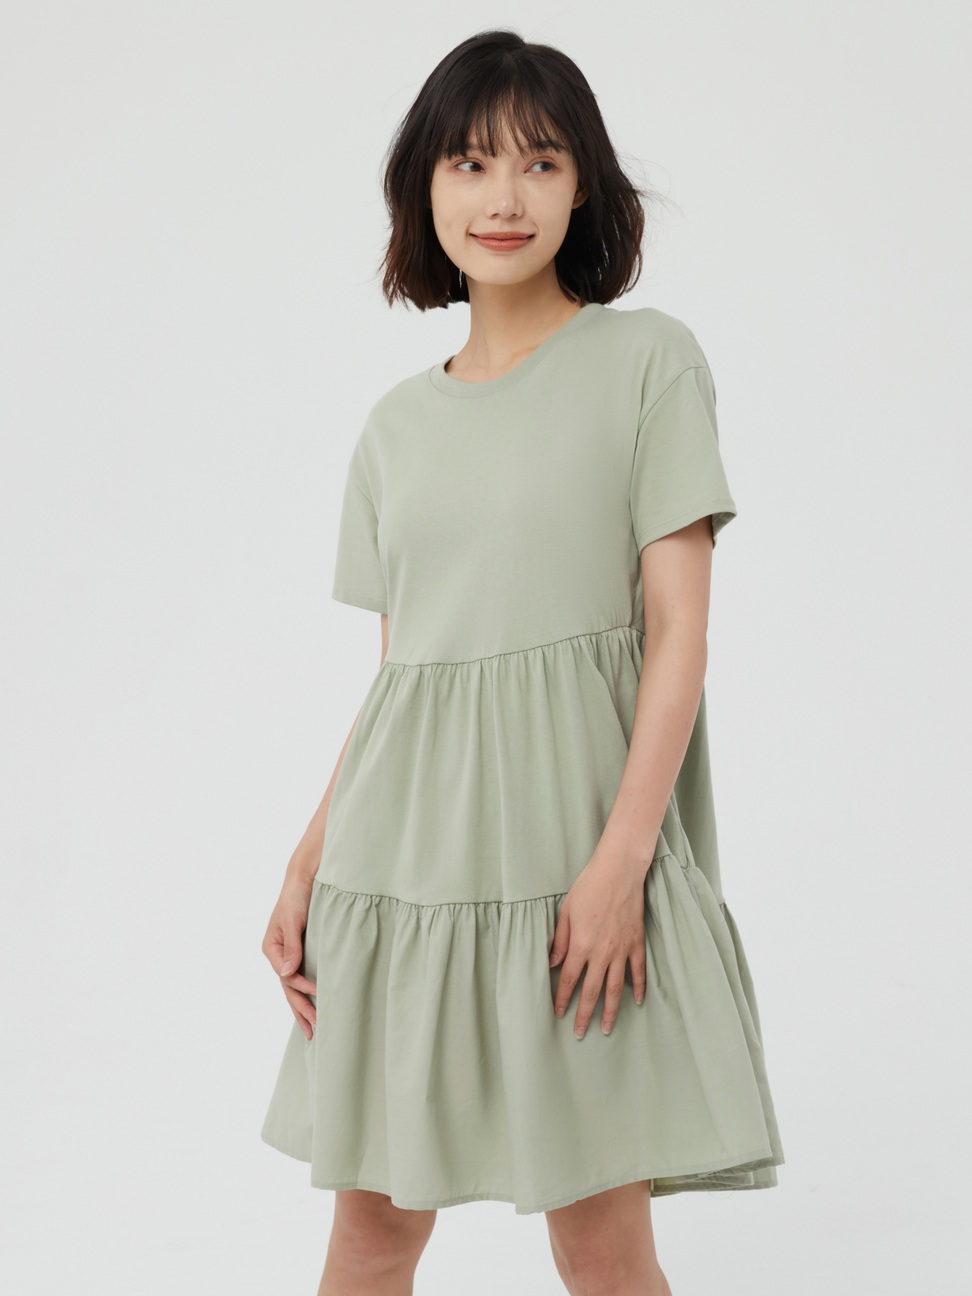 女裝|純棉寬鬆蛋糕裙短袖洋裝-淺綠色